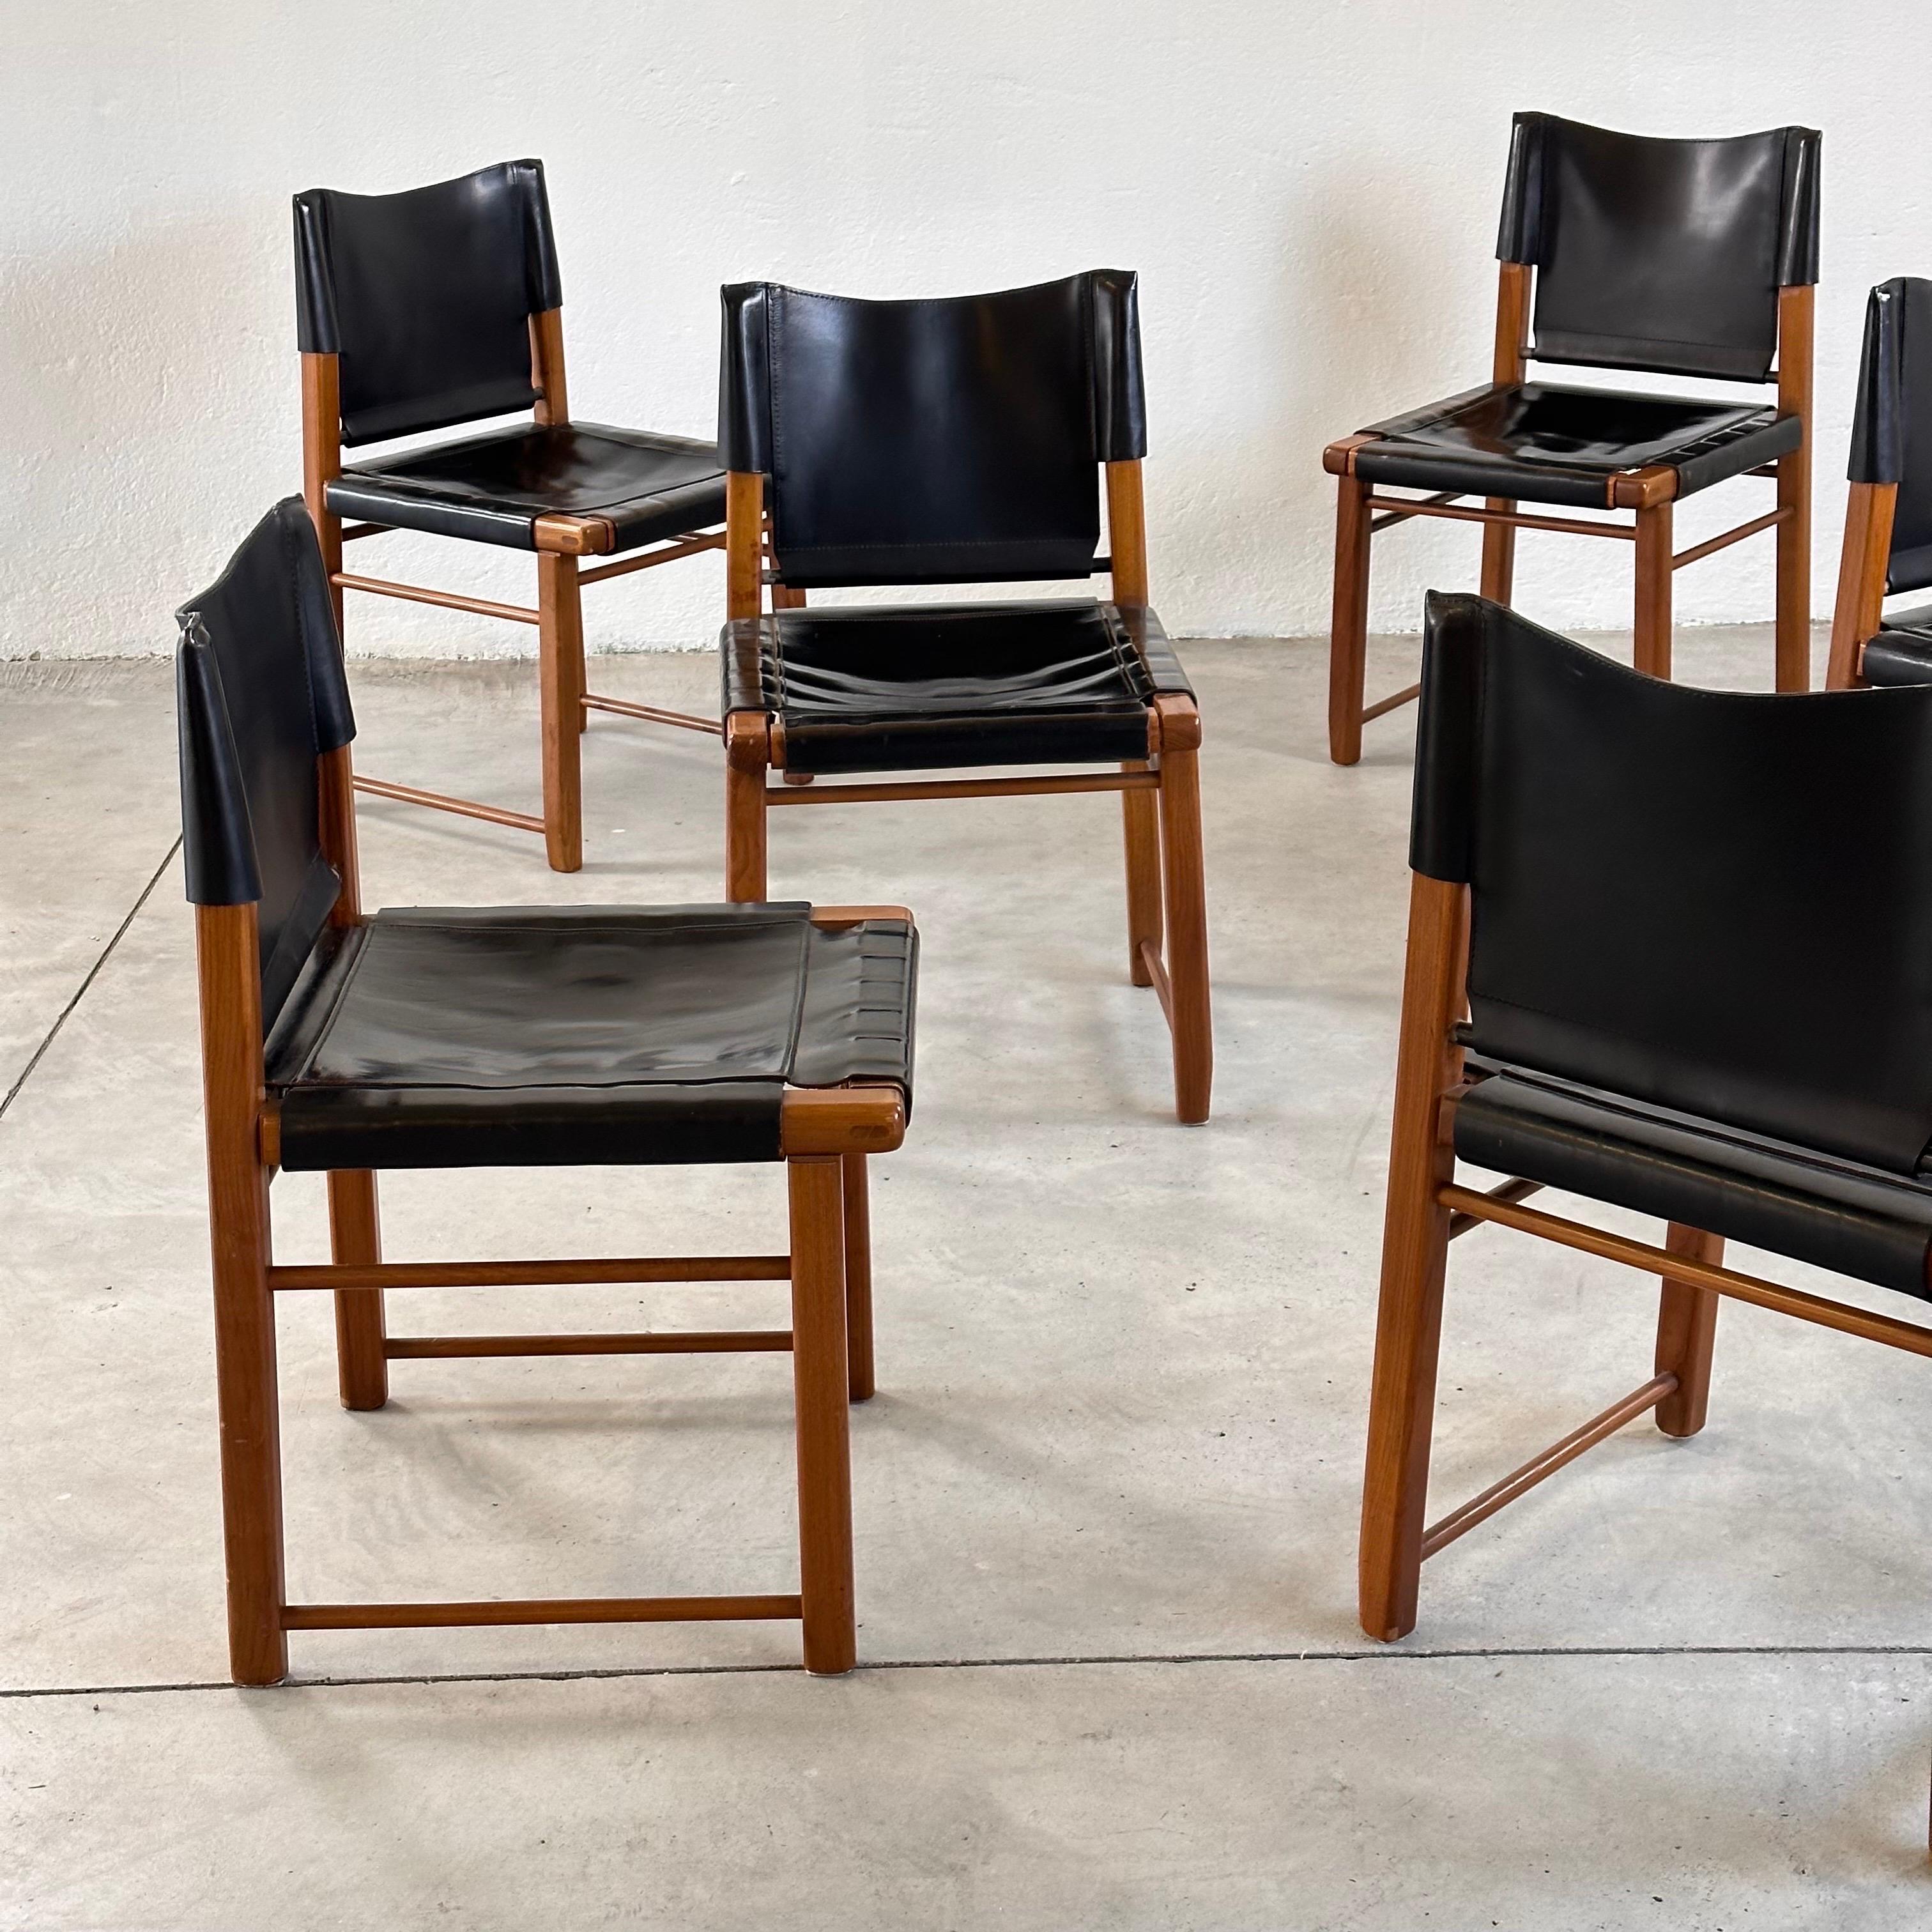 Schicke italienische Eleganz: Satz von sechs Esszimmerstühlen aus Nussbaum und schwarzem Leder, 1970er Jahre (Ende des 20. Jahrhunderts)